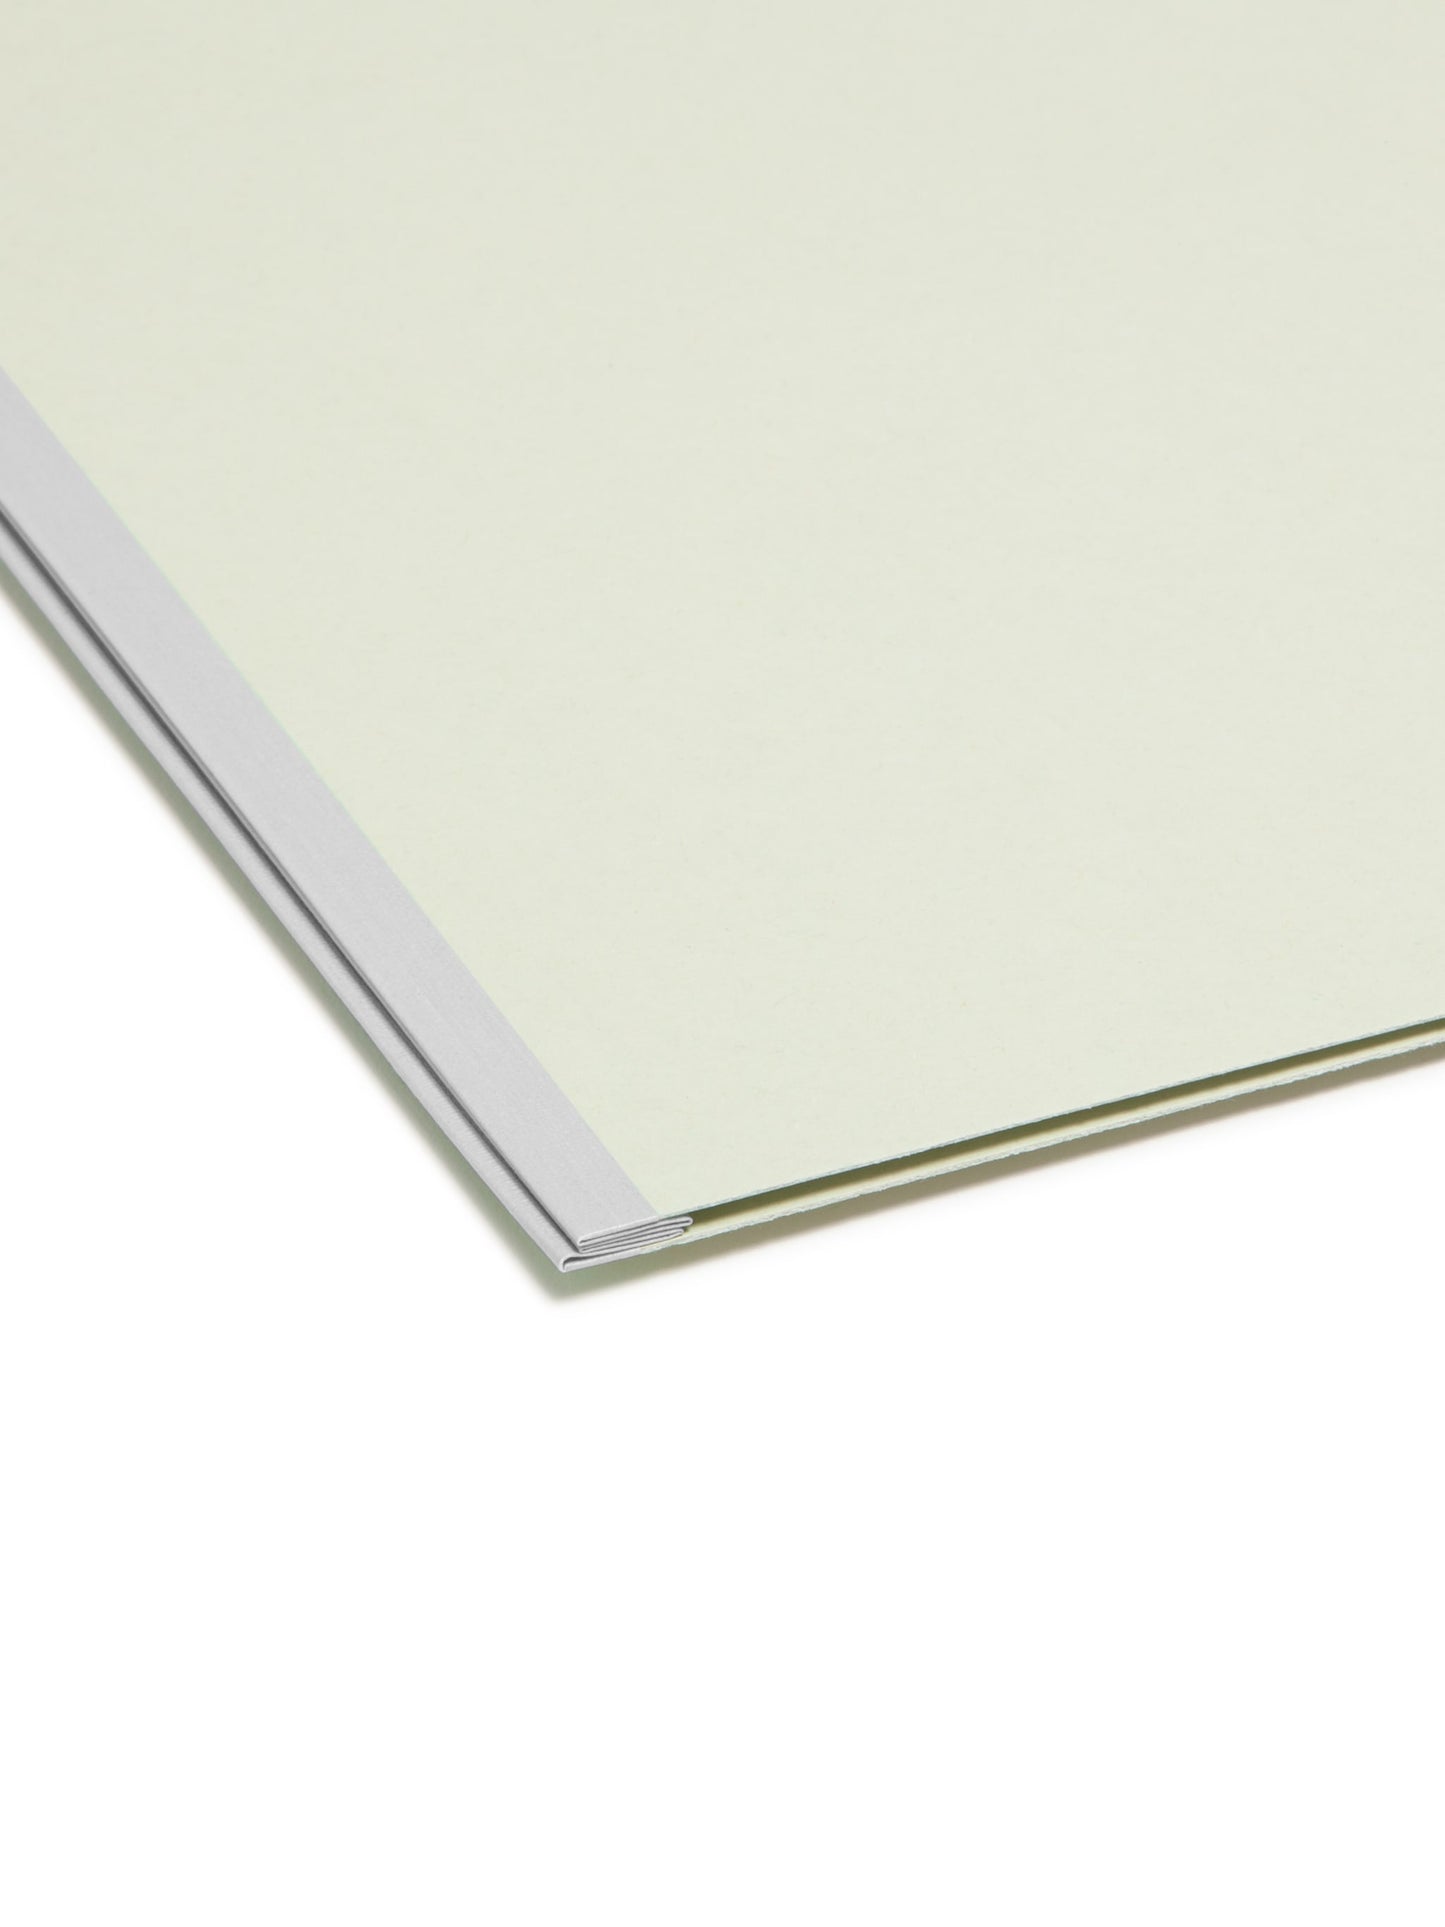 SuperTab® Pressboard Fastener File Folders, Gray/Green Color, Letter Size, Set of 25, 086486149815